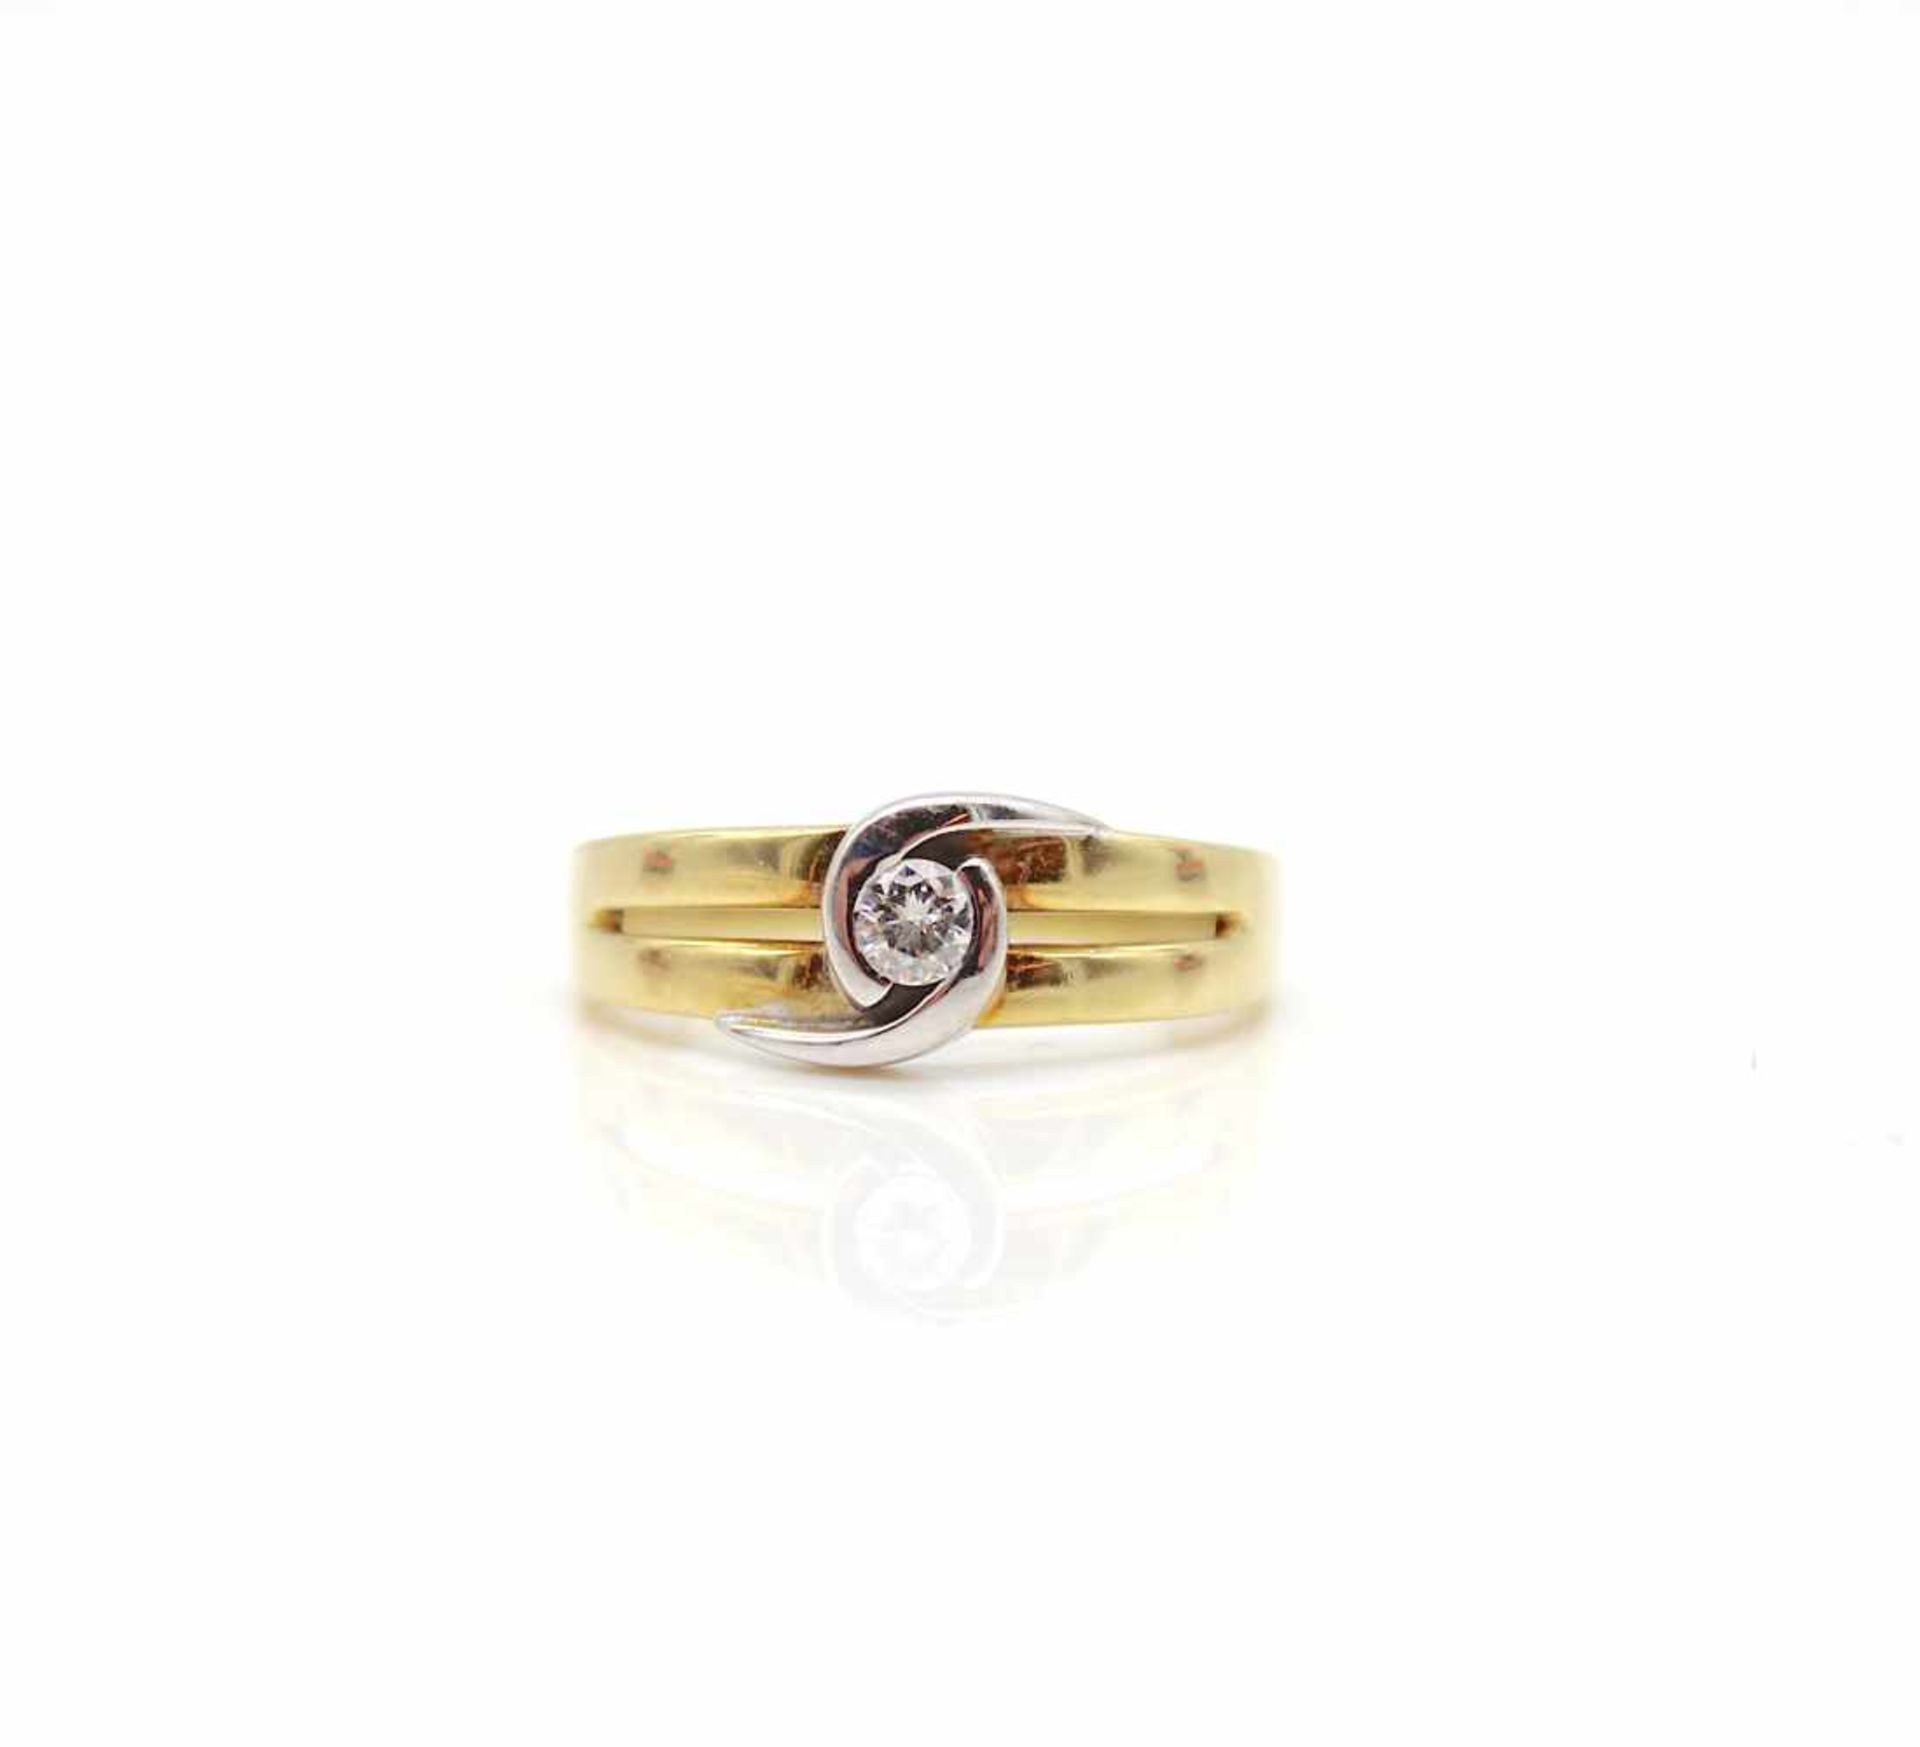 Ring aus 585er Gold mit einem Brillanten ca. 0,16 ct, hohe Reinheit mittlere Farbe. Gewicht 3,8 g,